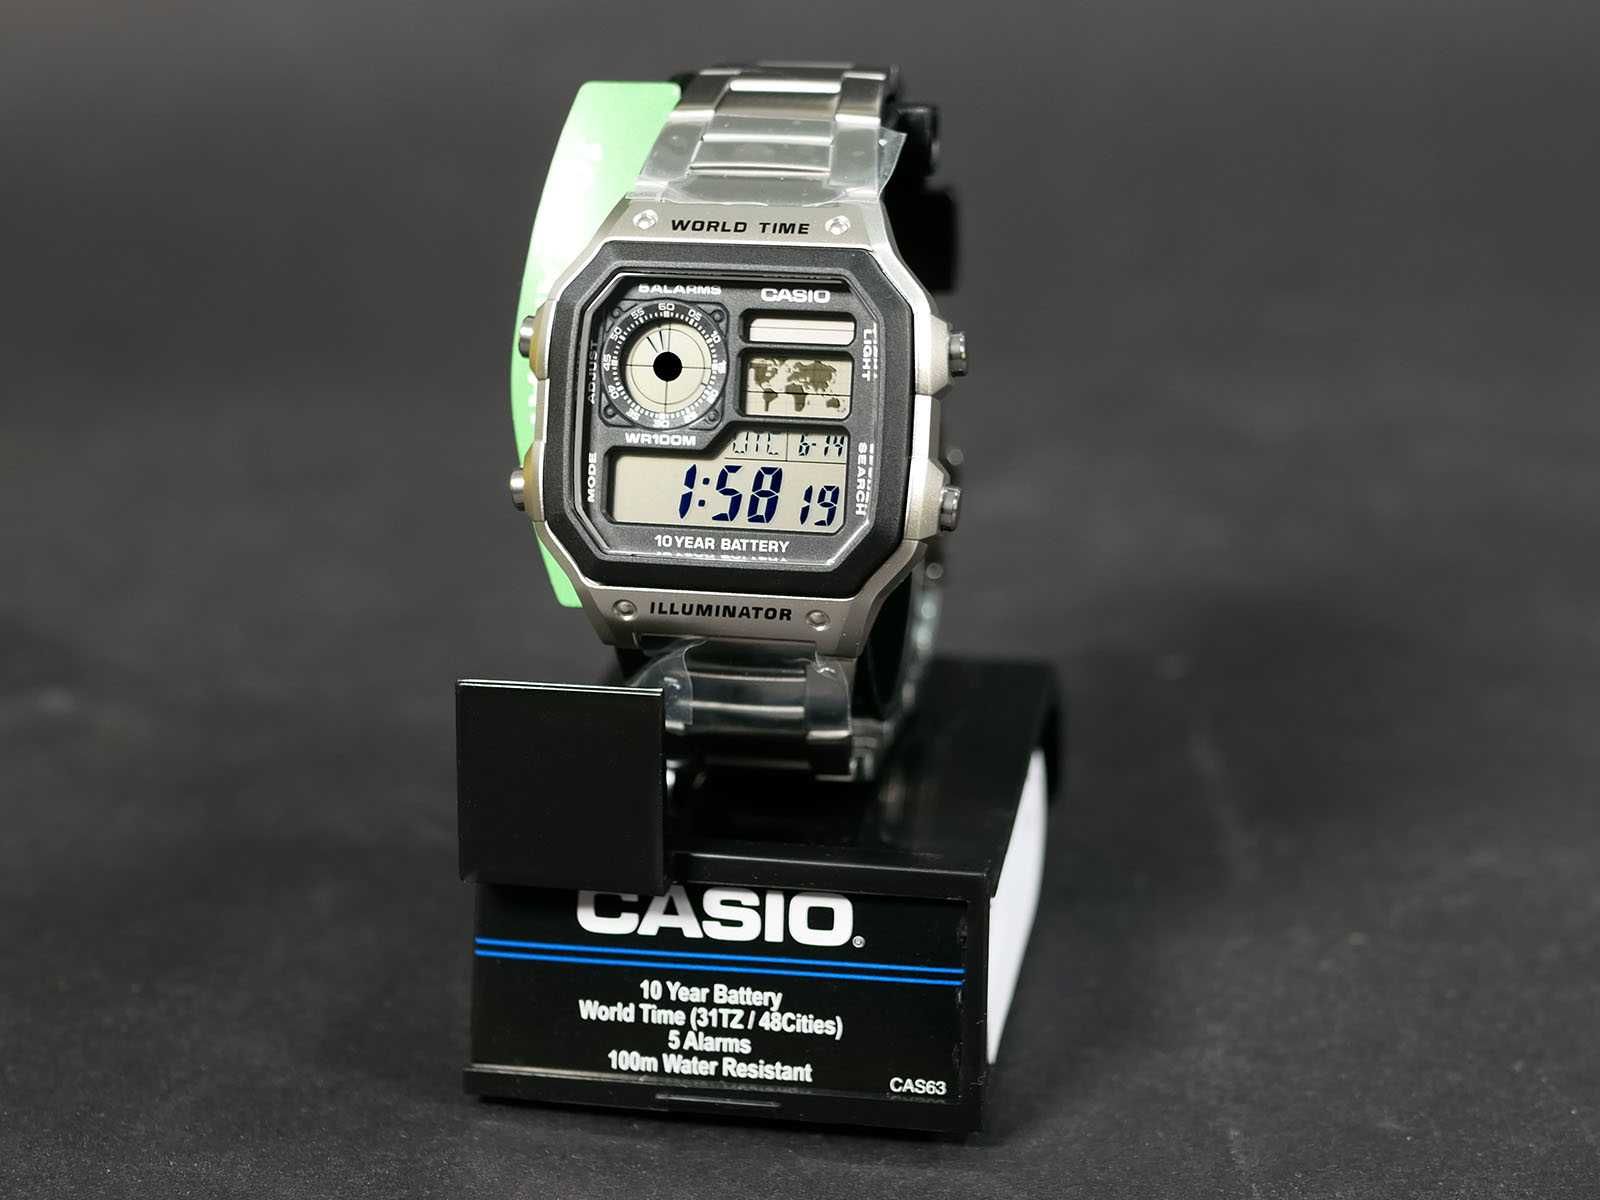 Годинник Casio AE-1200WHD-1AV нержавіюча сталь. 10 років батарейка